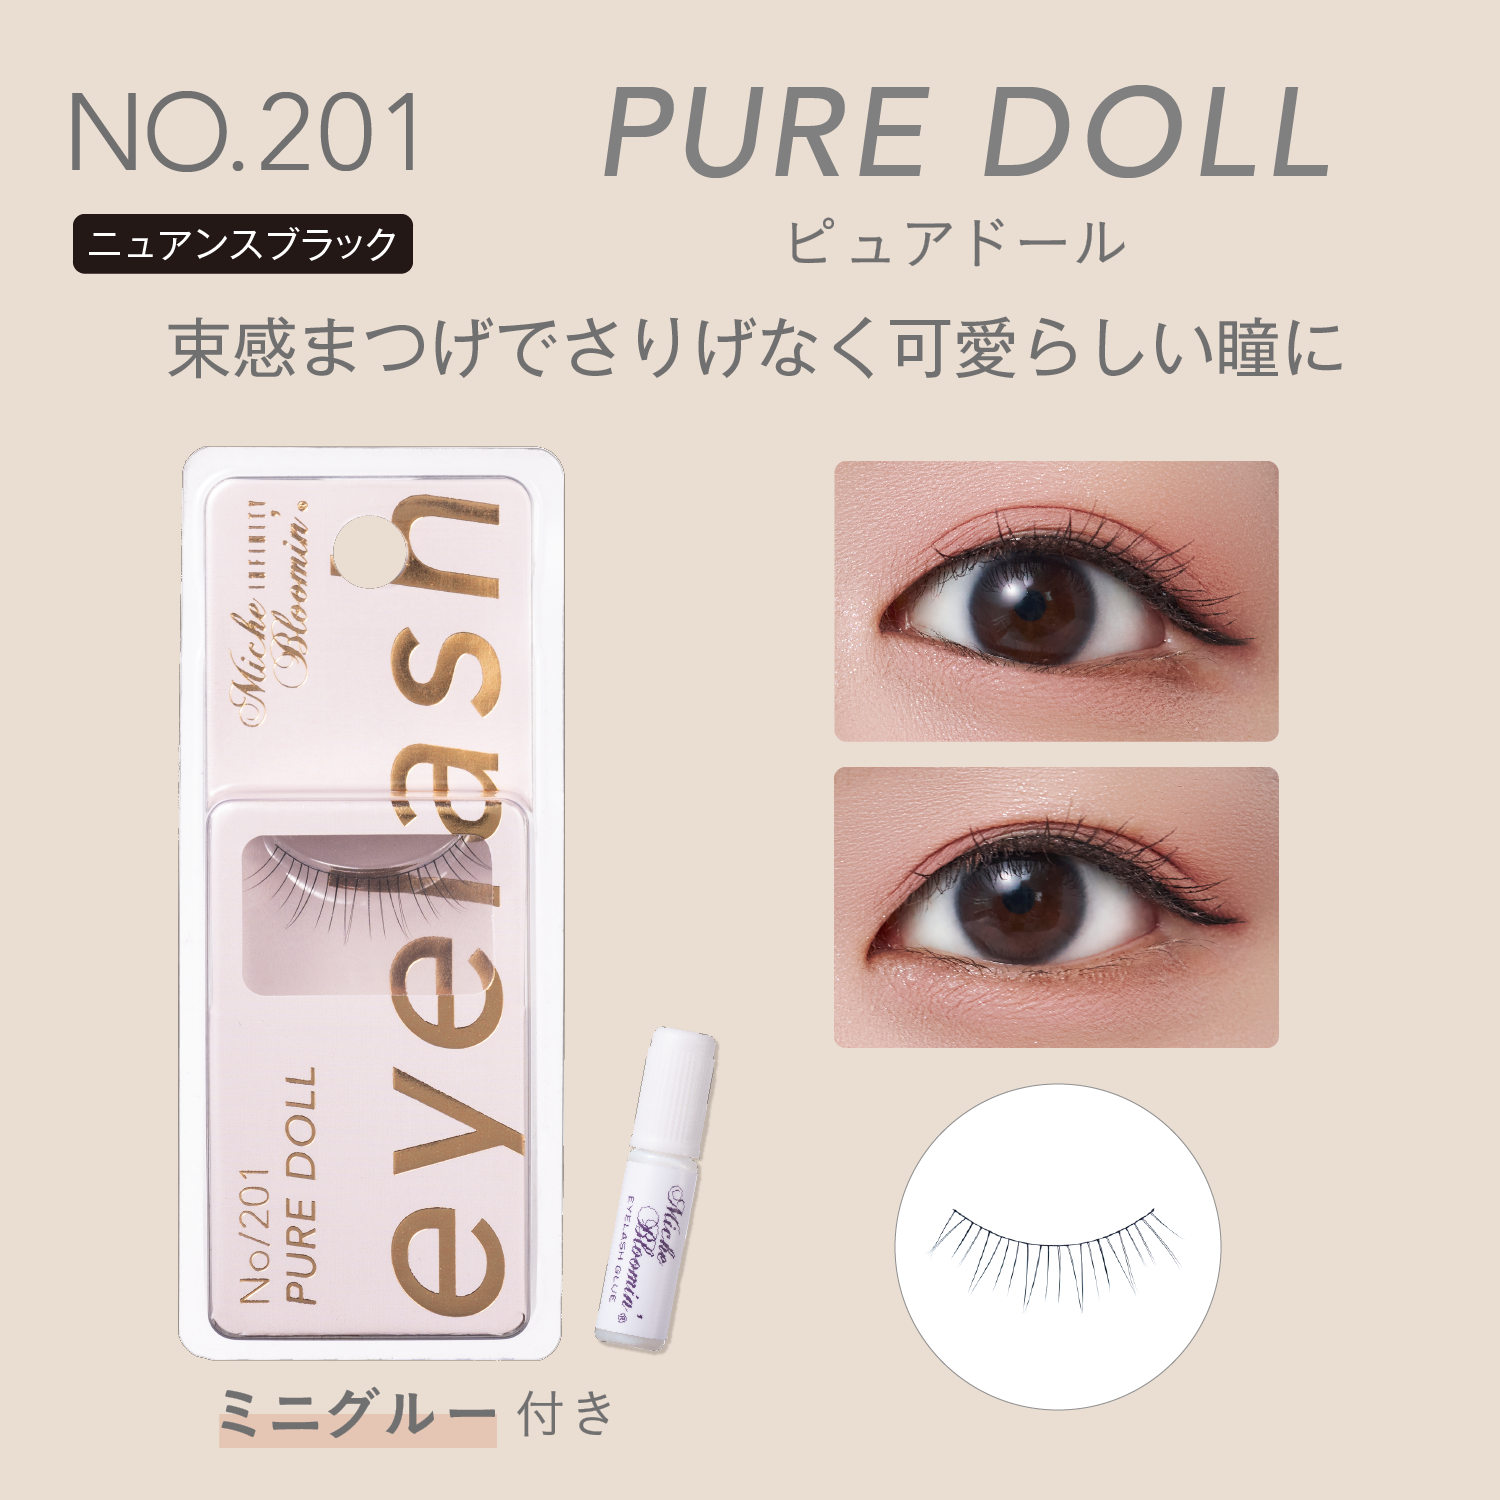 NO.201 Pure Doll